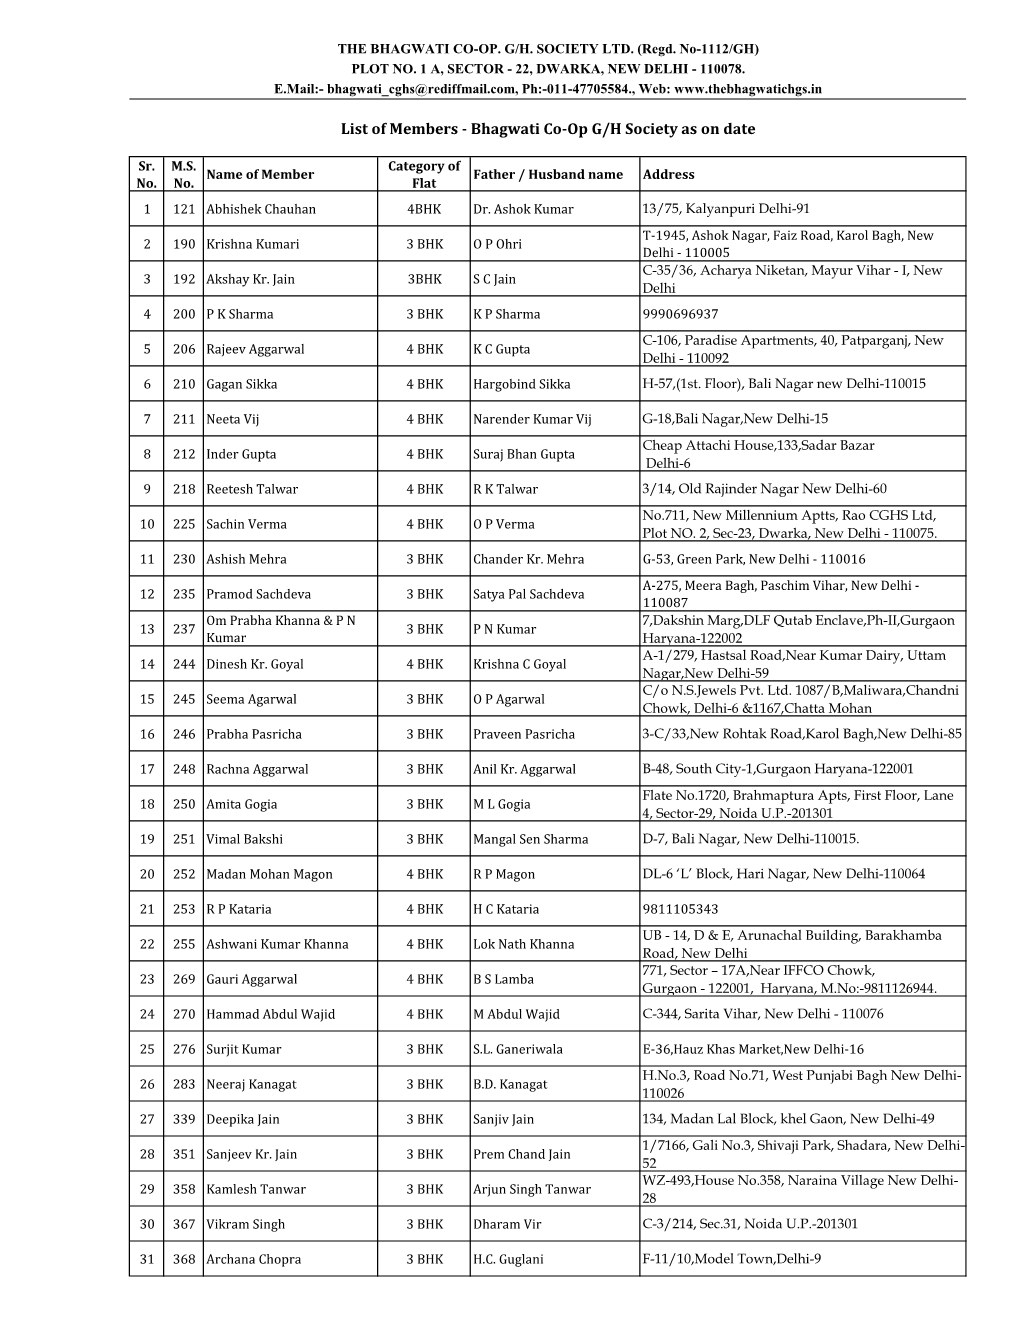 List of Members - Bhagwati Co-Op G/H Society As on Date